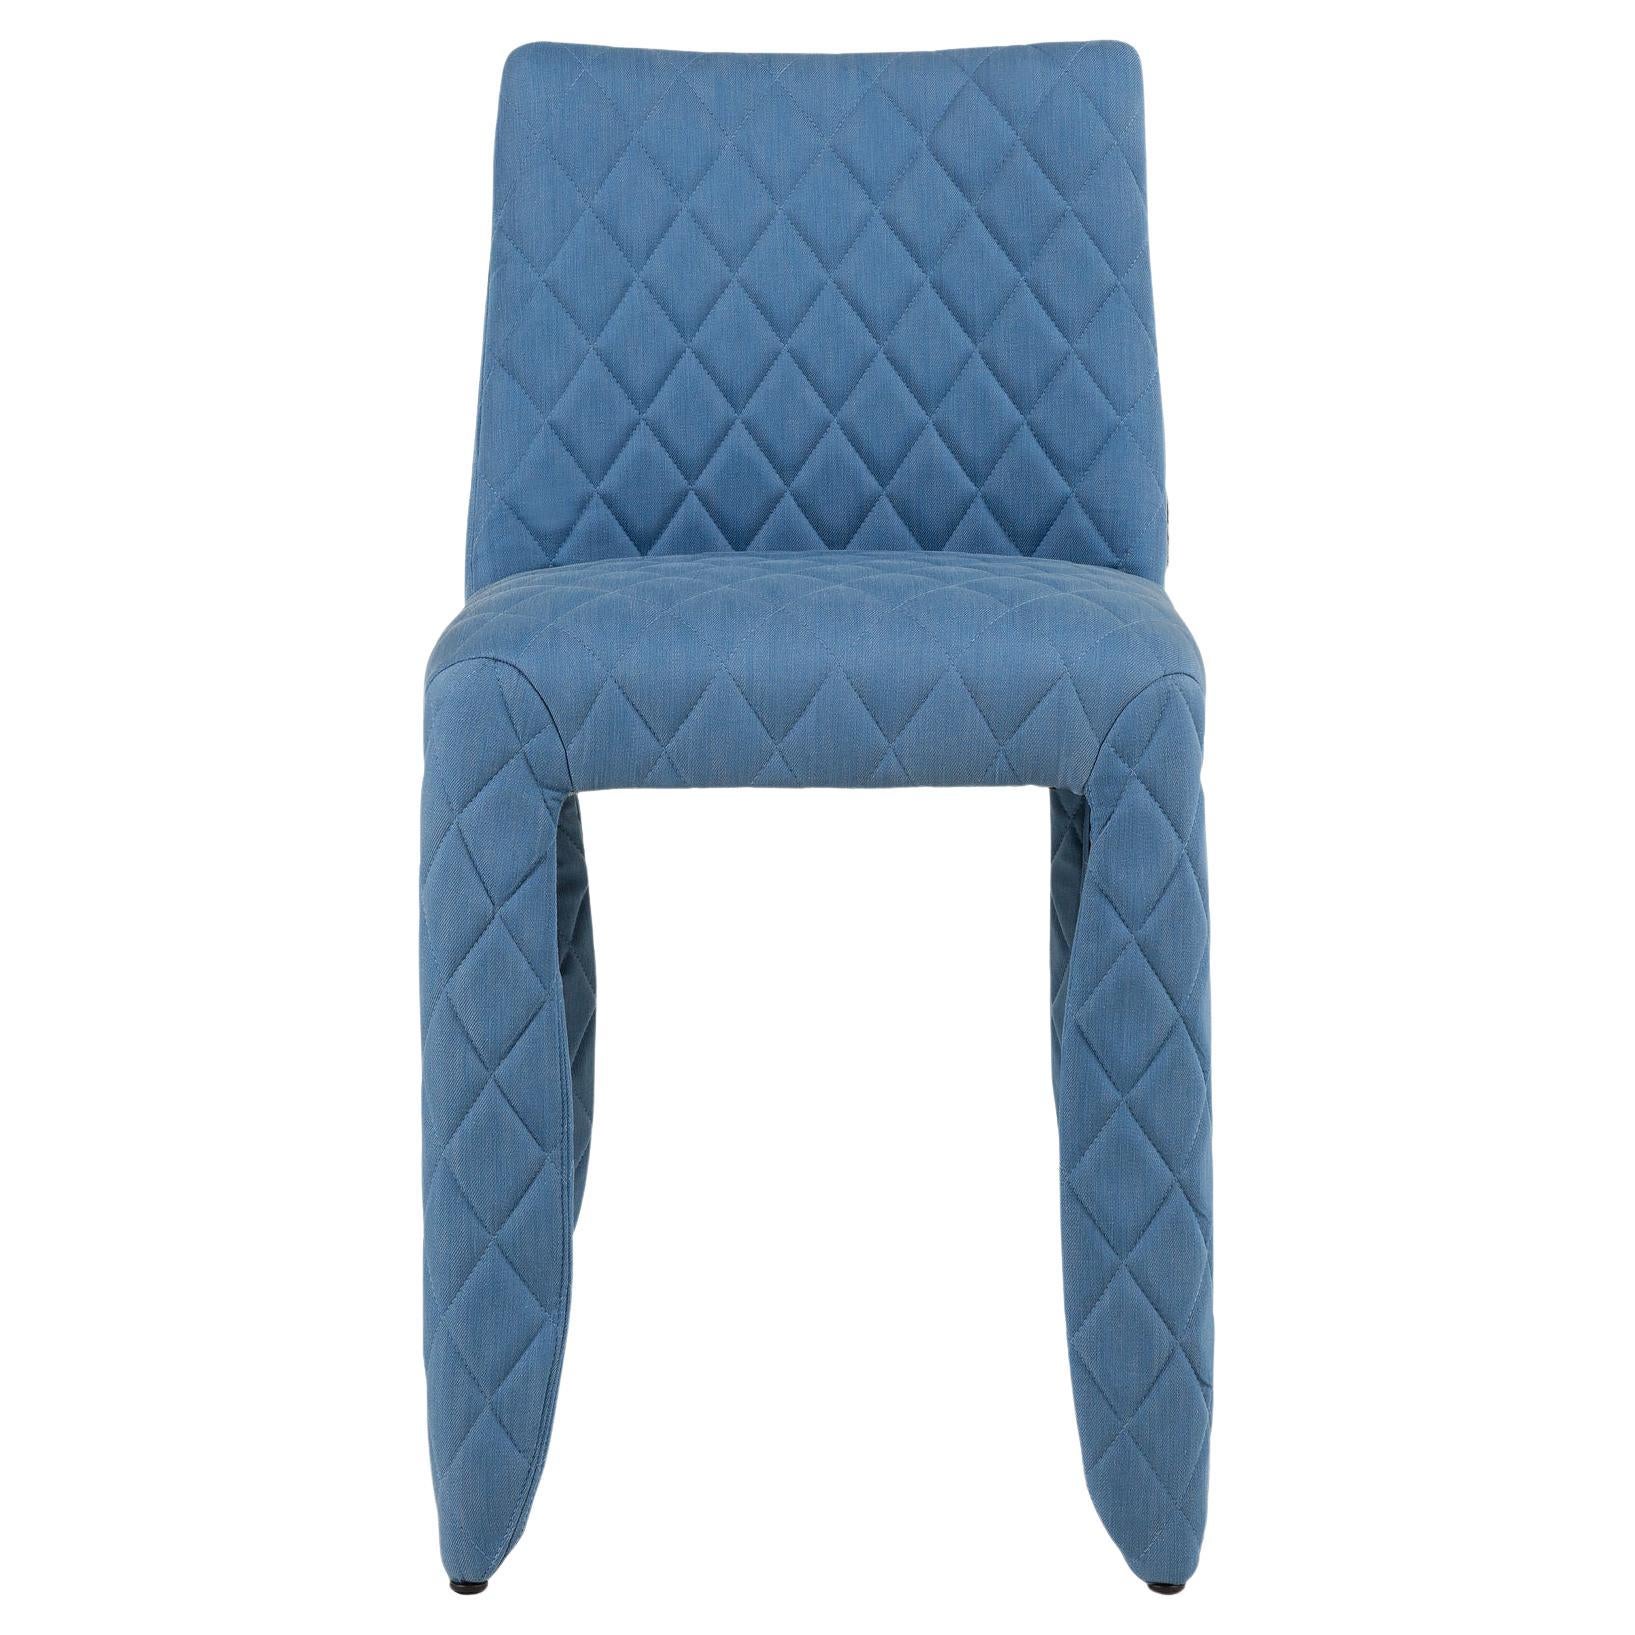 Moooi Monster Diamond Chair in Denim Light Wash Blue Upholstery For Sale